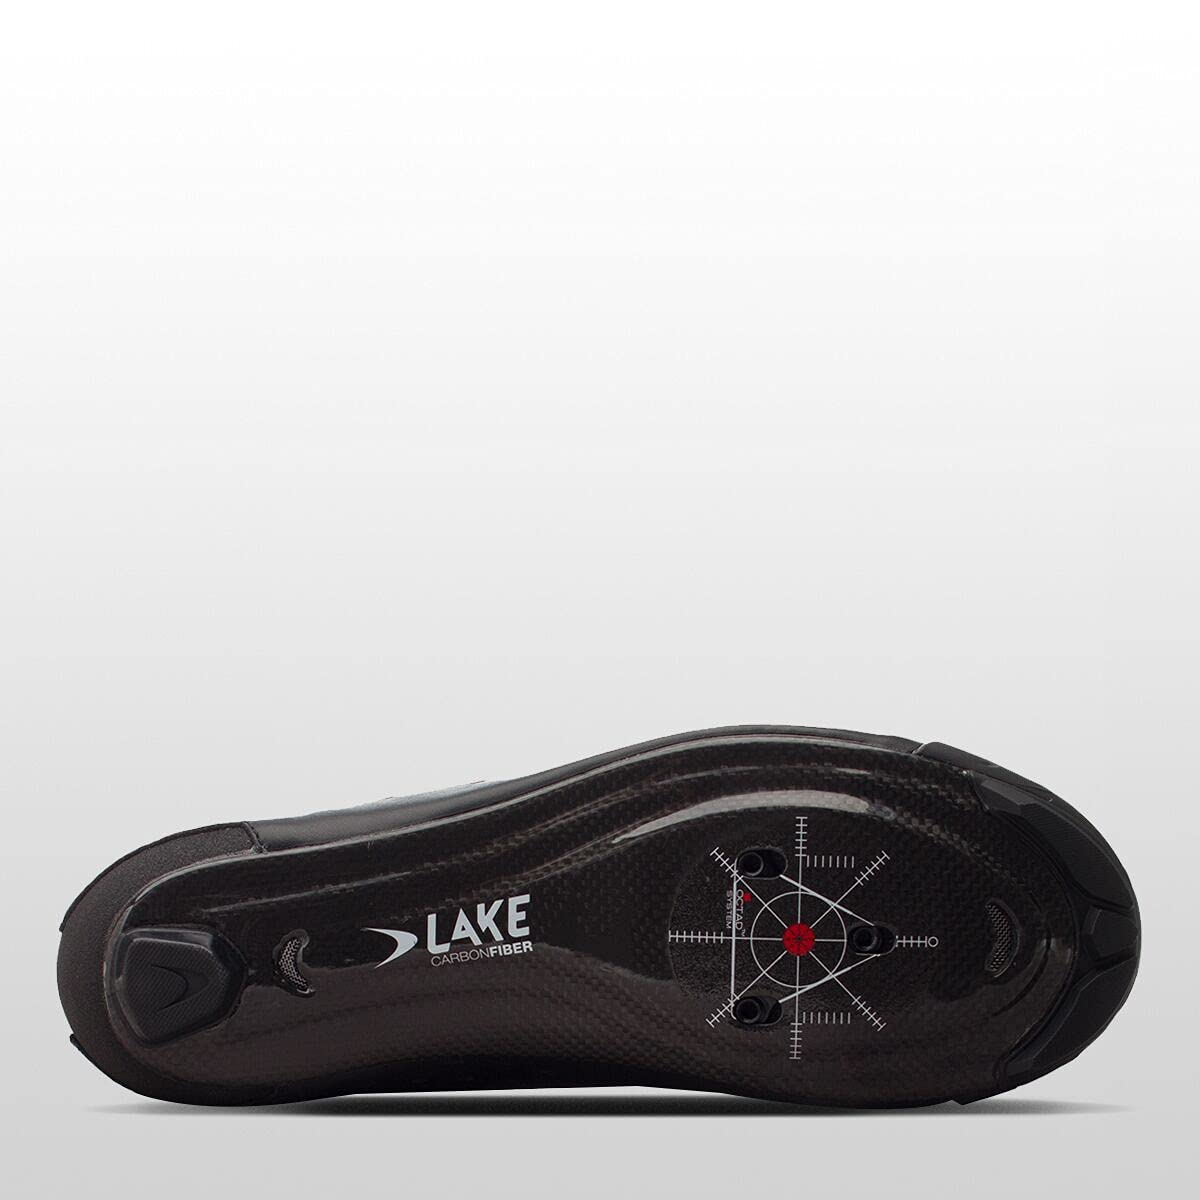 Lake Men's Shoes Cx238